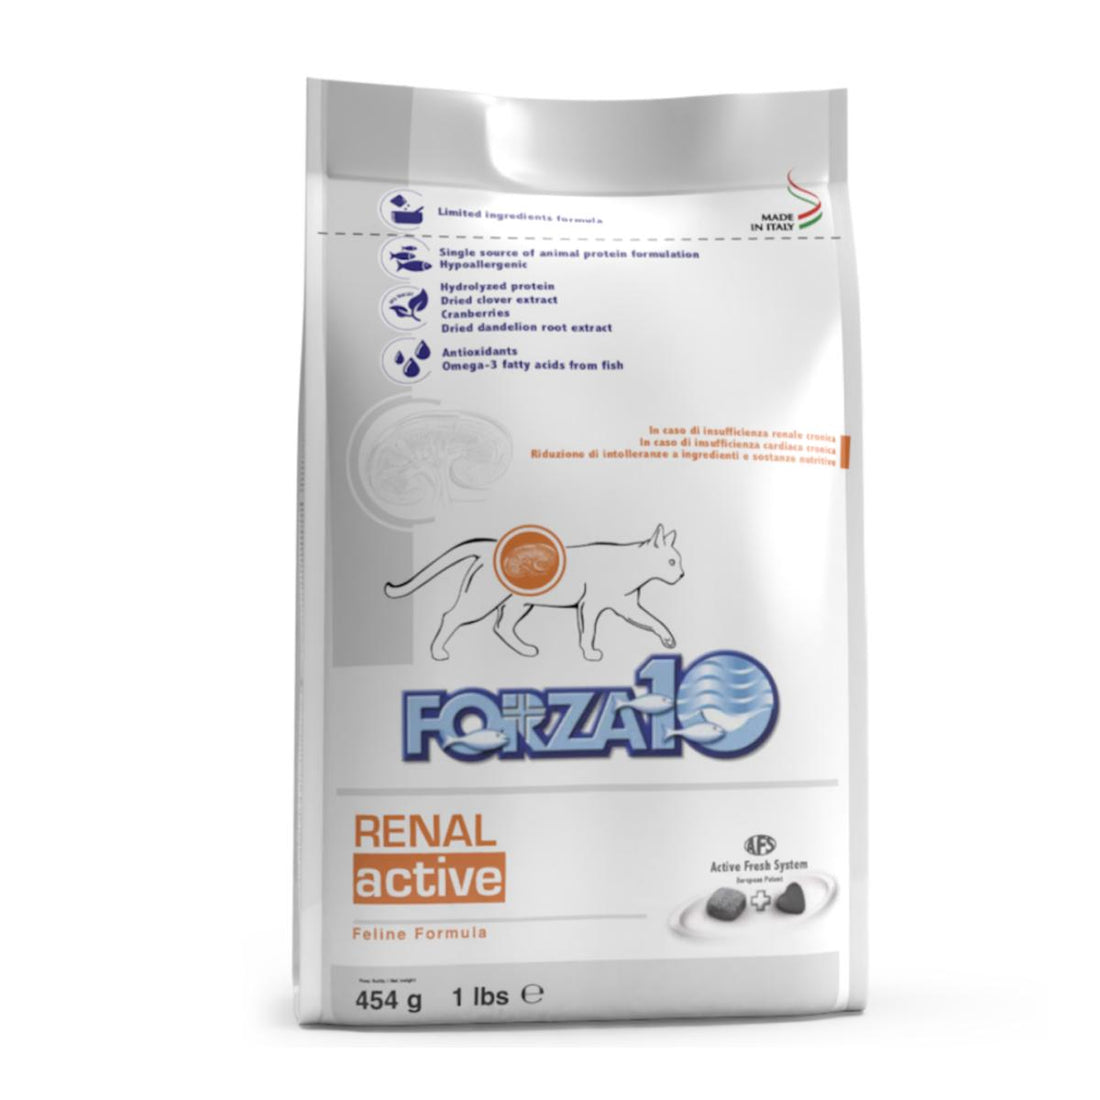 Forza10 Active Line Renal - ветеринарная диета для взрослых кошек при хронической почечной недостаточности,1,5кг.